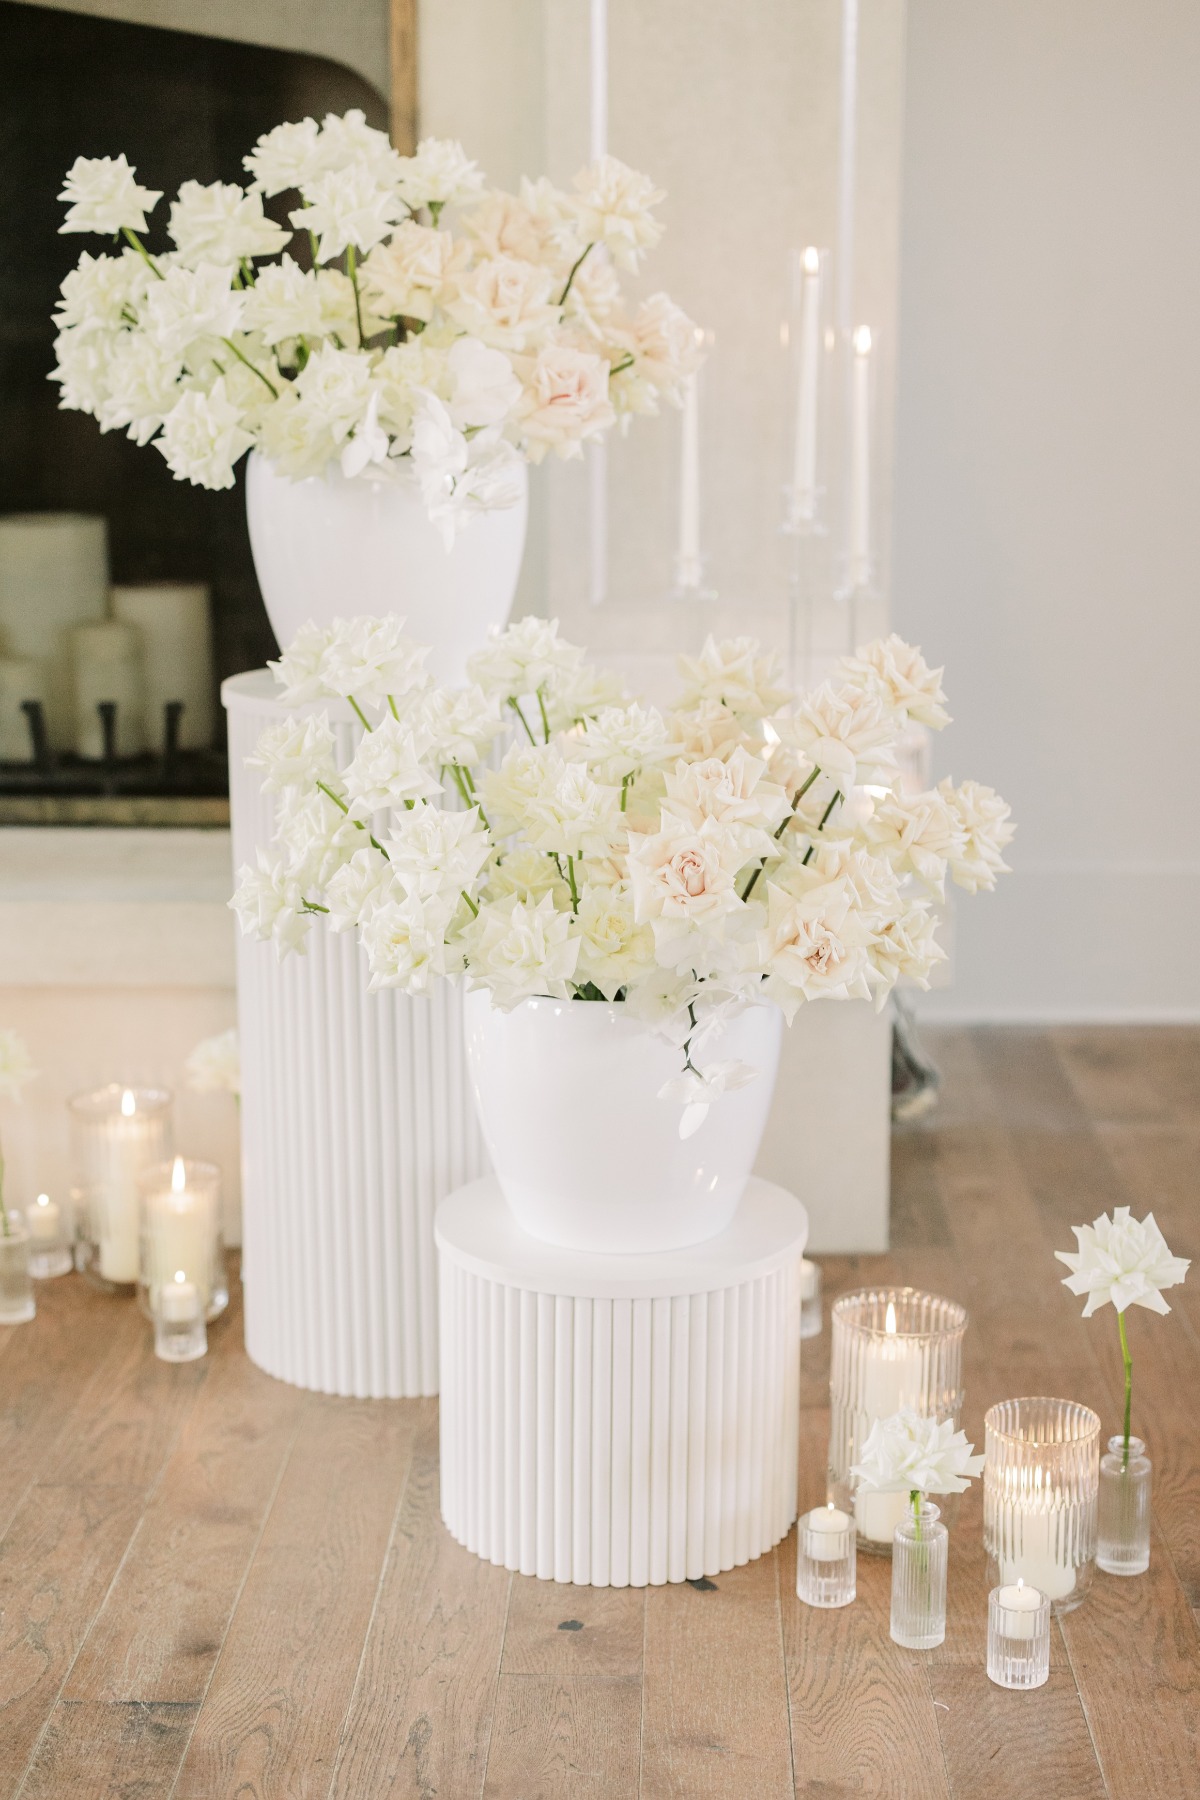 White garden rose wedding centerpiece for modern ceremony